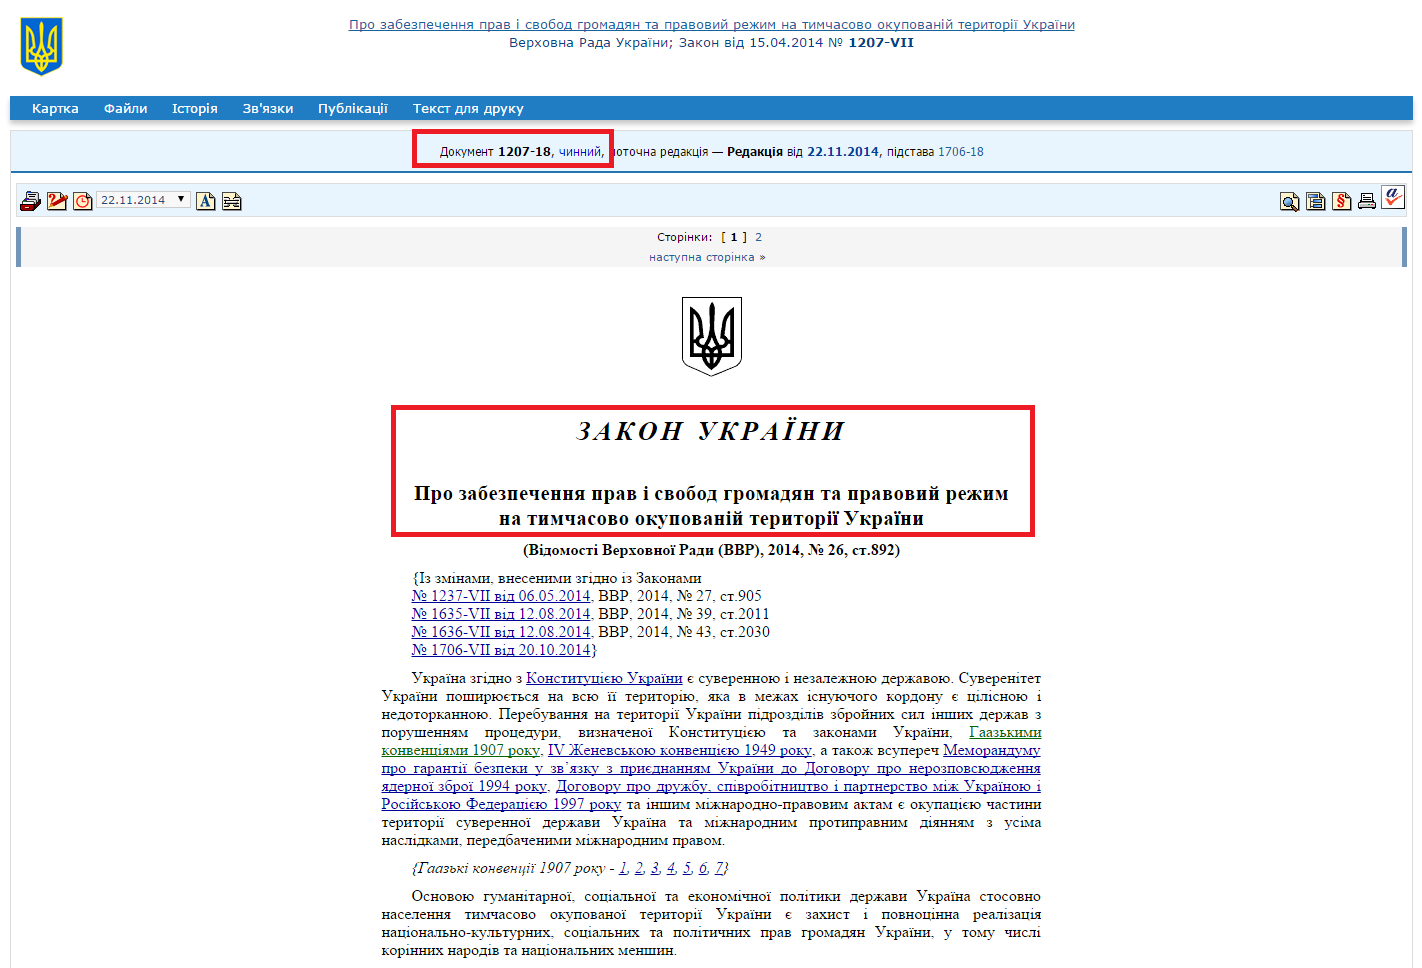 http://zakon1.rada.gov.ua/laws/show/1207-18